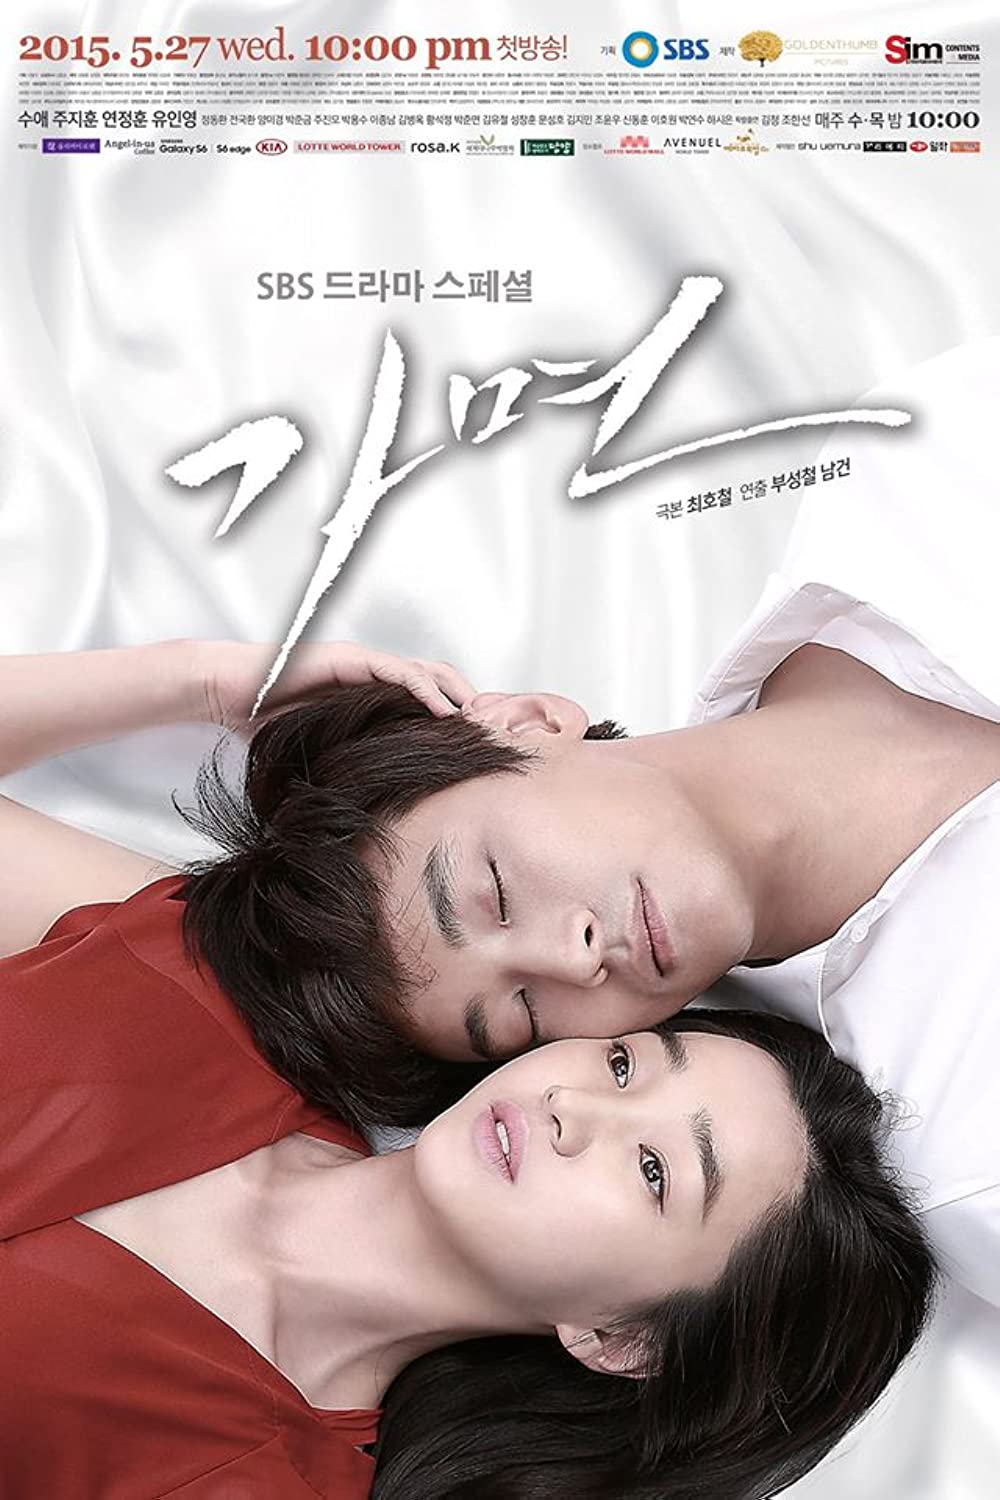 Phim Hàn Quốc về giới thượng lưu: Mặt nạ - Mask (2015)